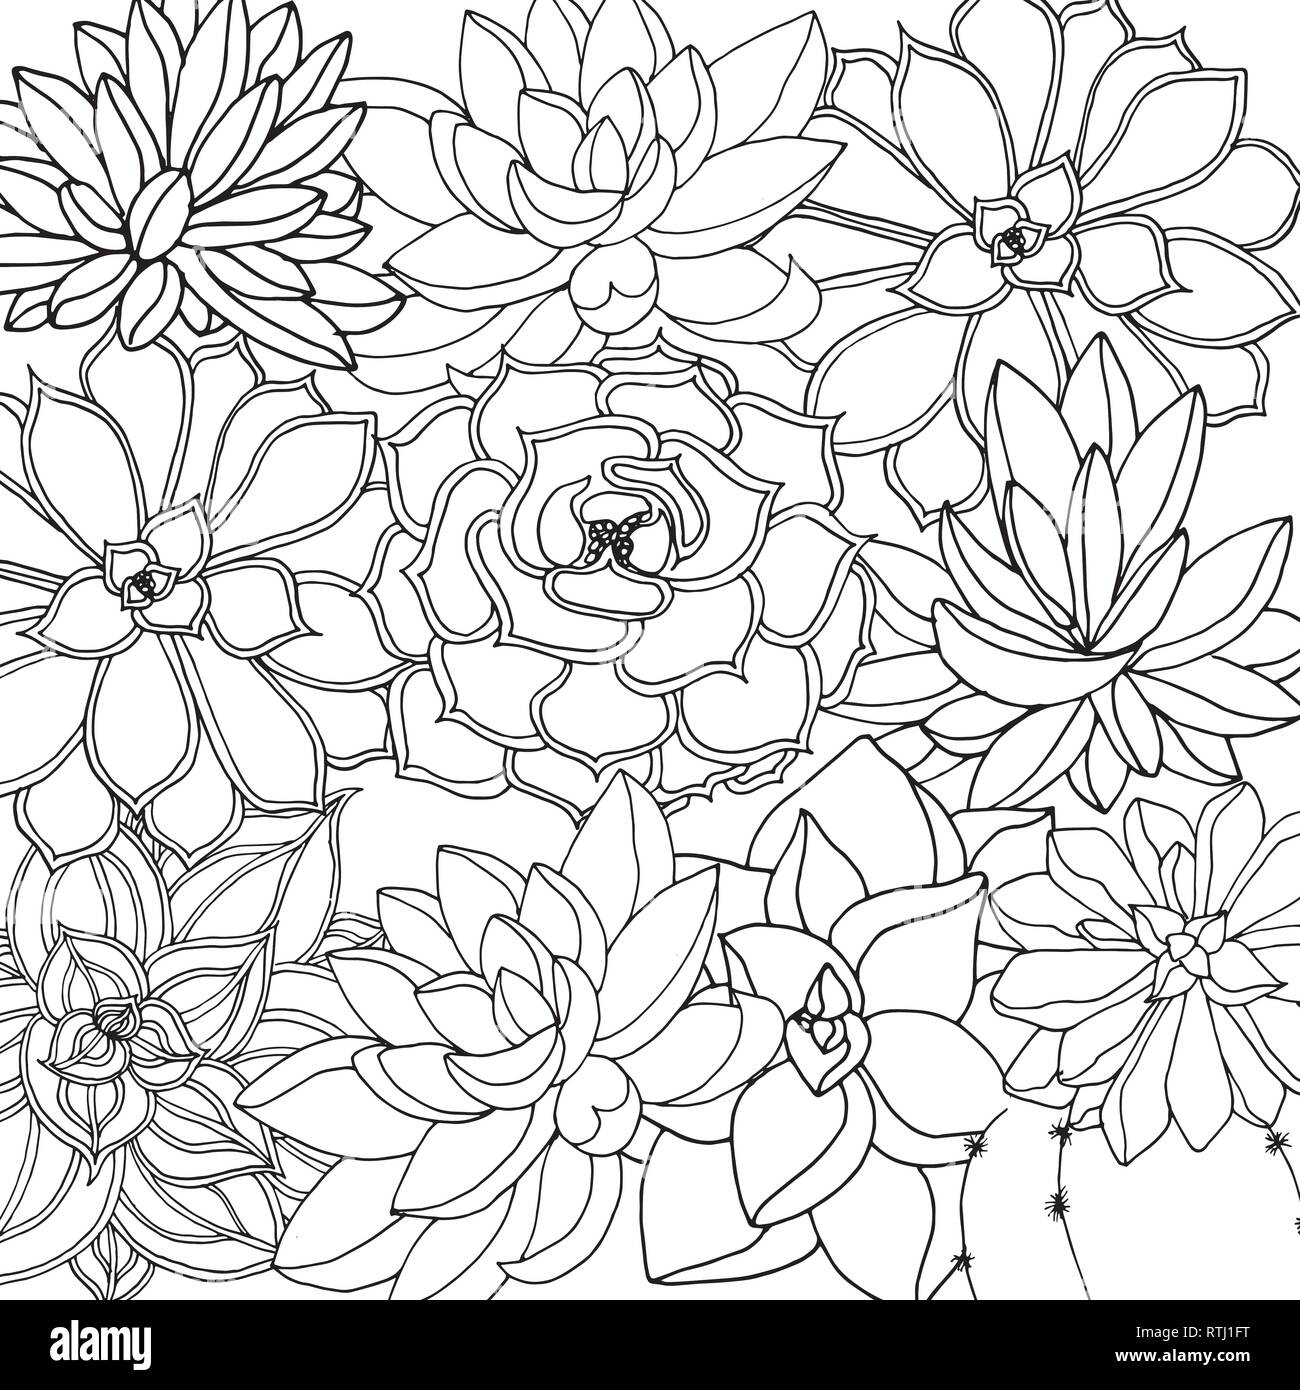 Doodle floral background en vecteur de doodles noir et blanc coloriage de plantes succulentes Illustration de Vecteur